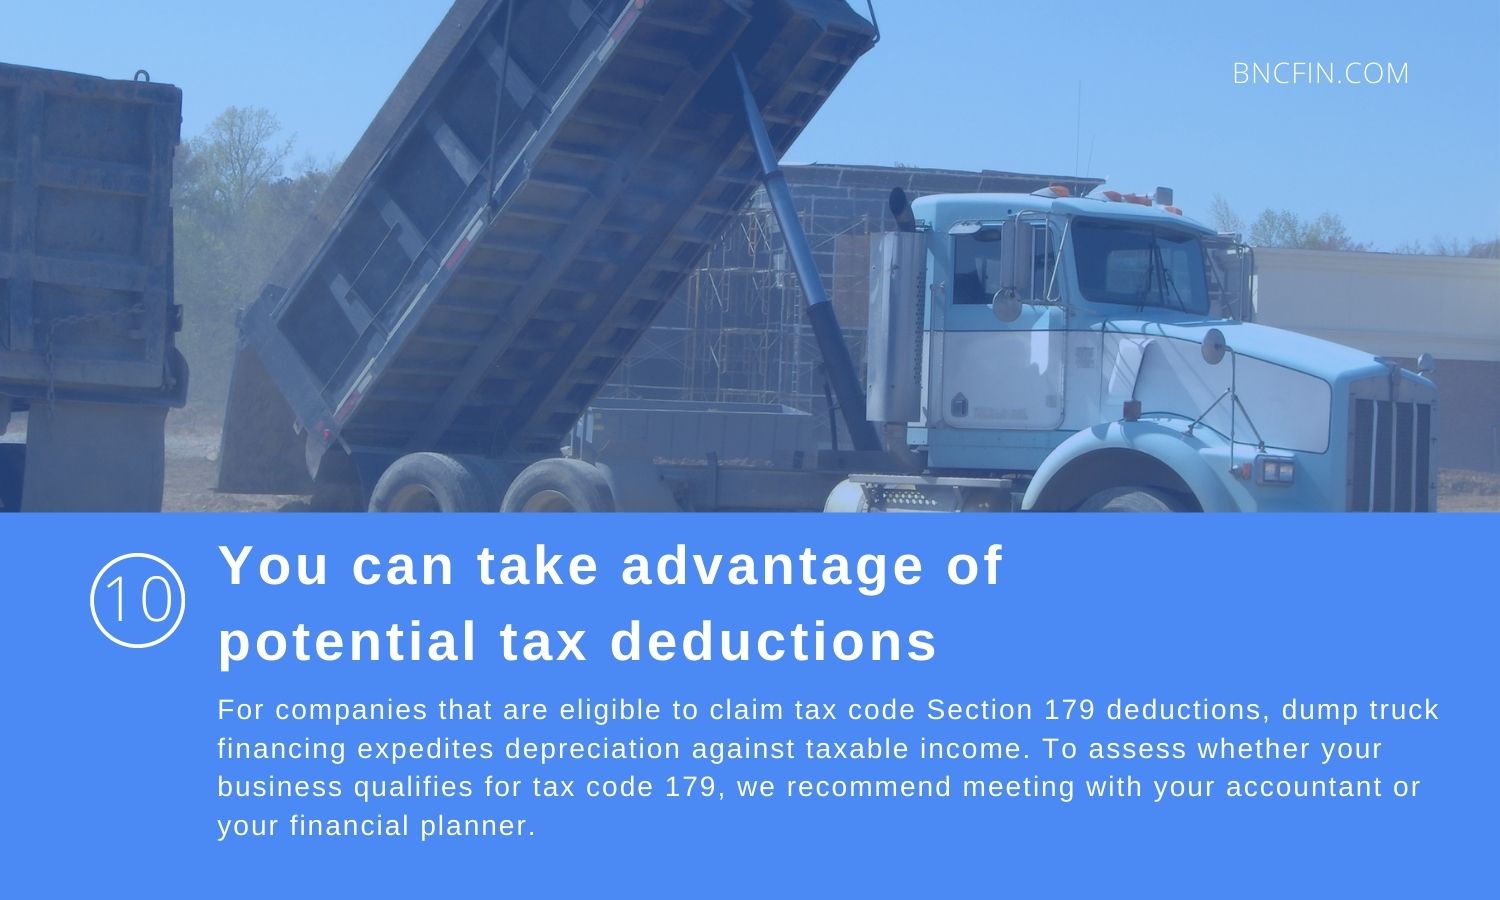 Dump Truck tax deductions